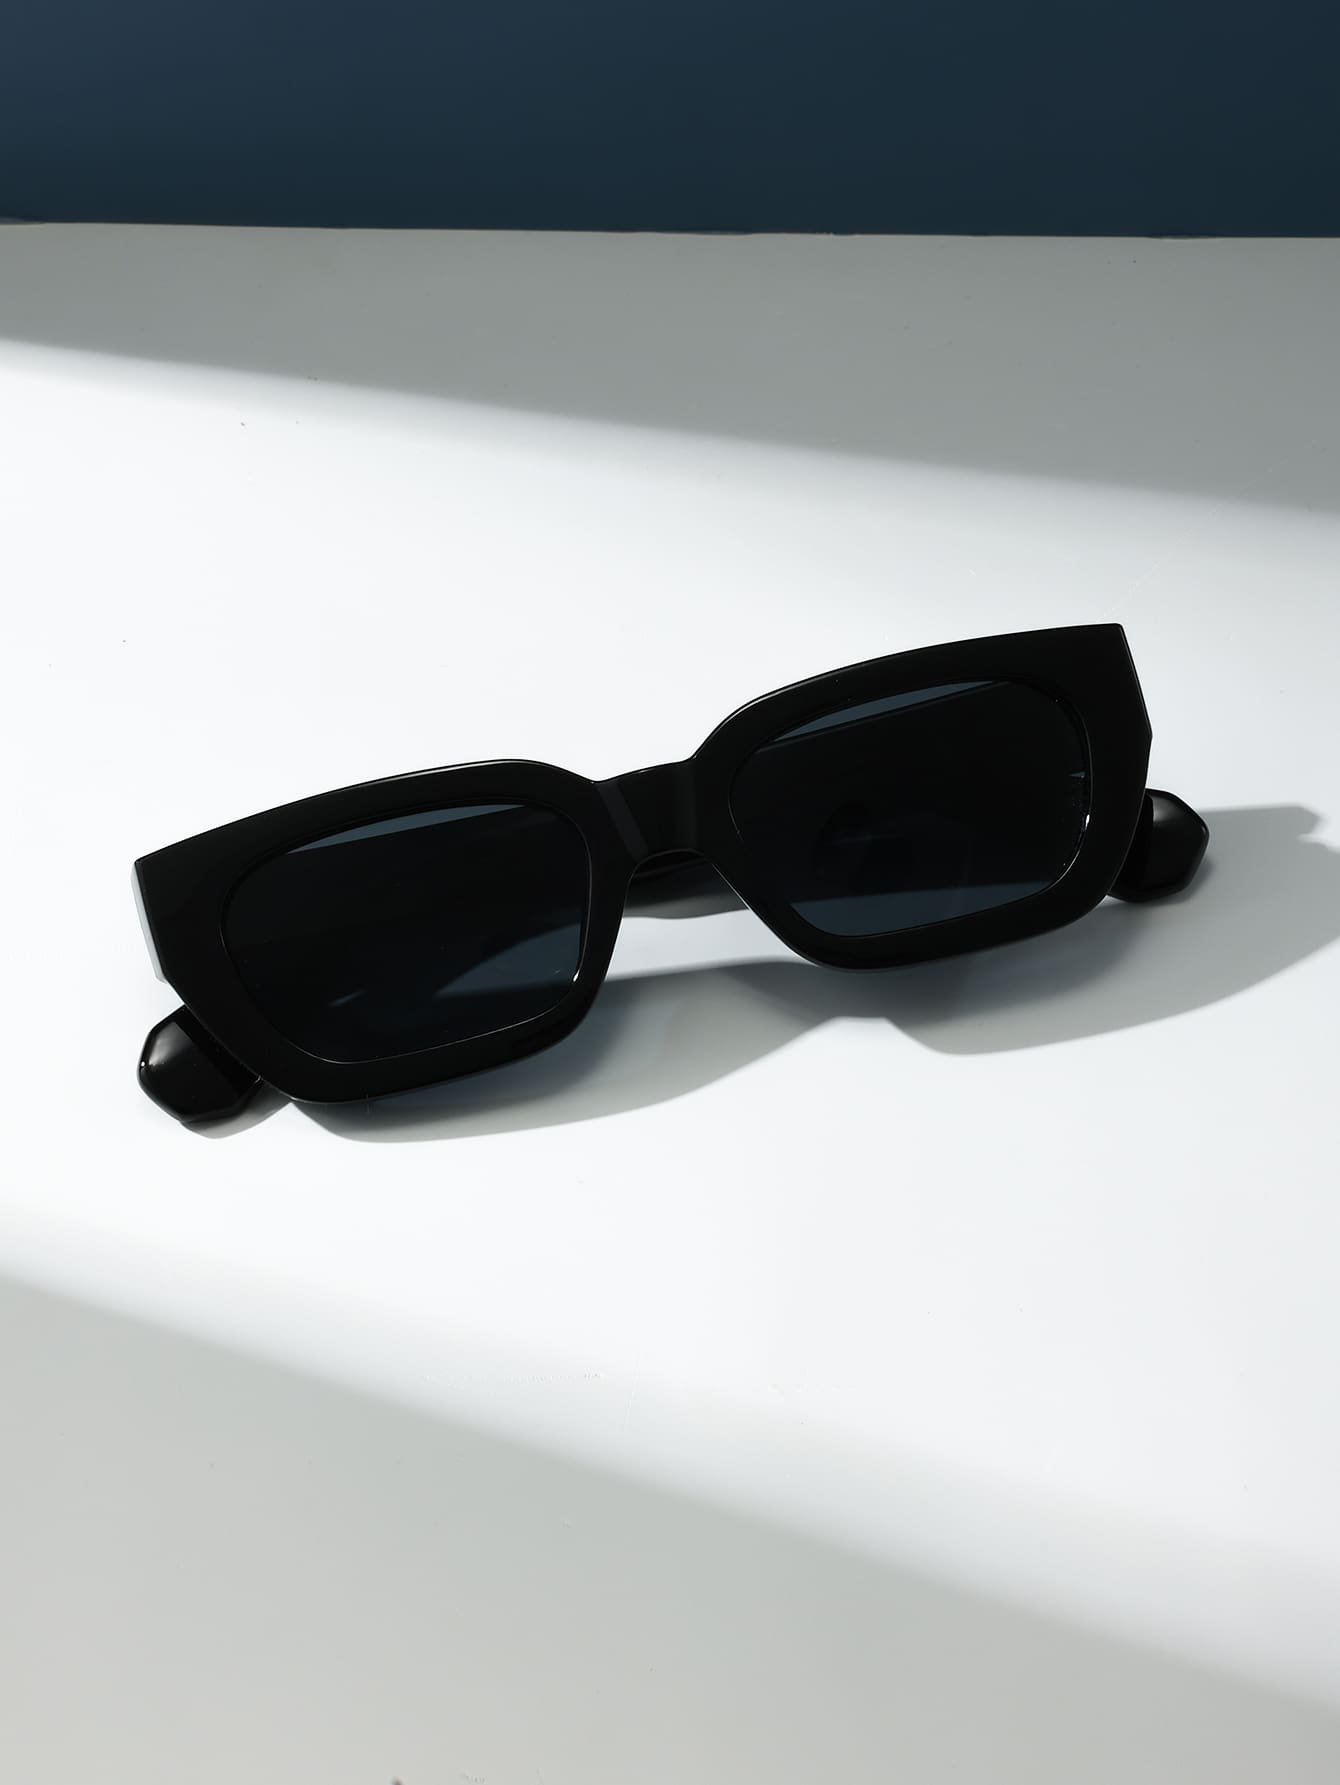 1 шт женские металлические квадратные декоративные солнцезащитные очки без оправы 1 шт. Женские модные декоративные пластиковые солнцезащитные очки квадратной формы